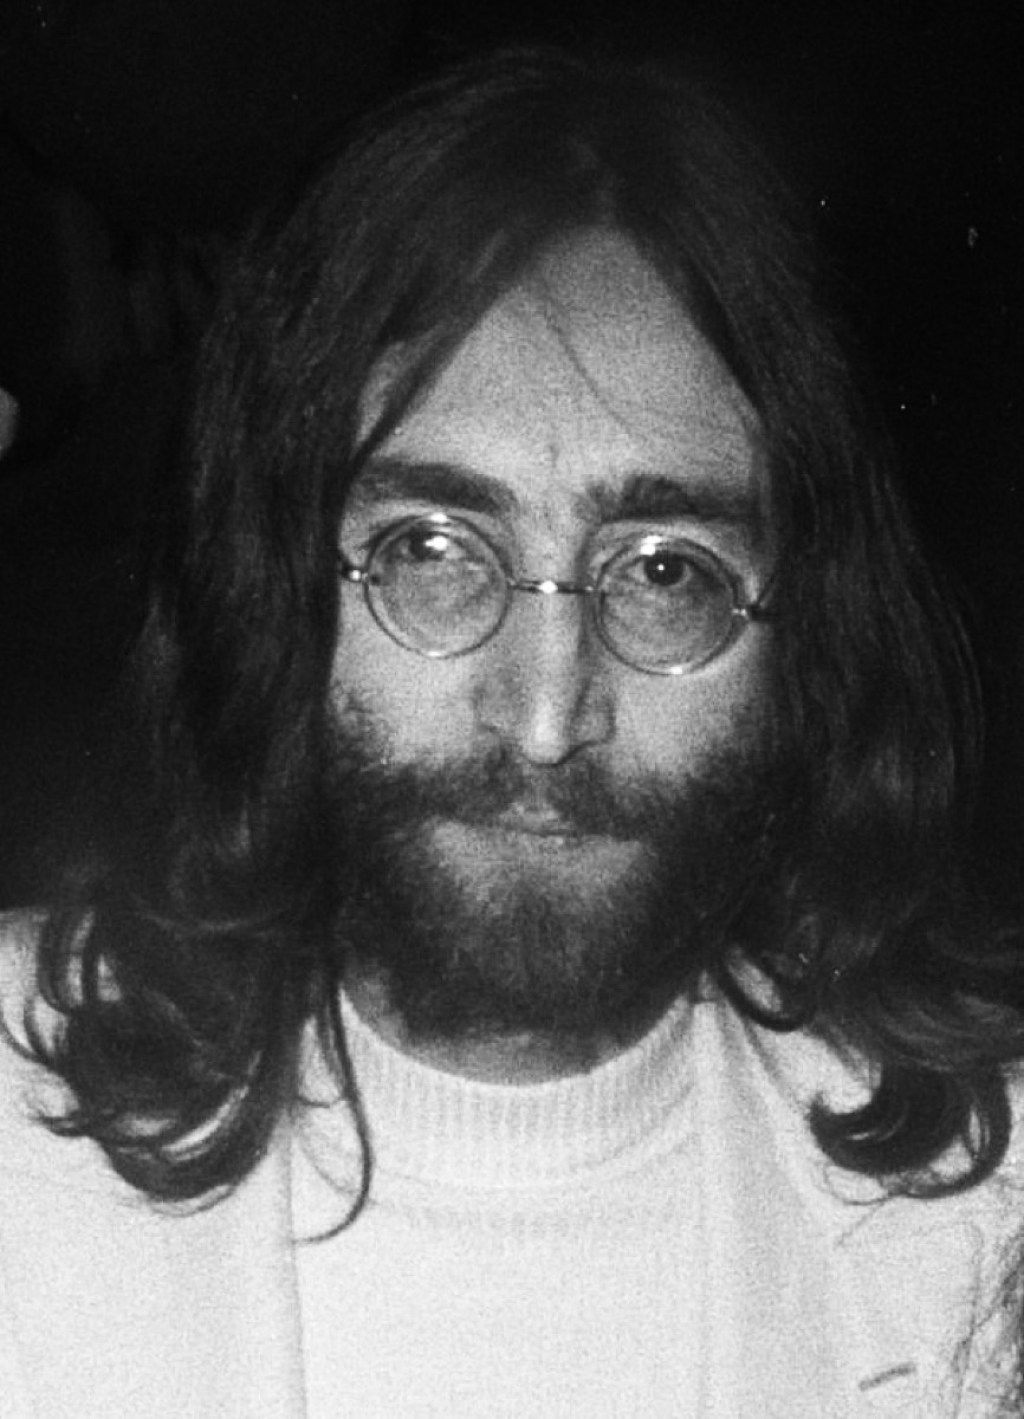 John Lennon dalait titokban hatalmas sztárok írták